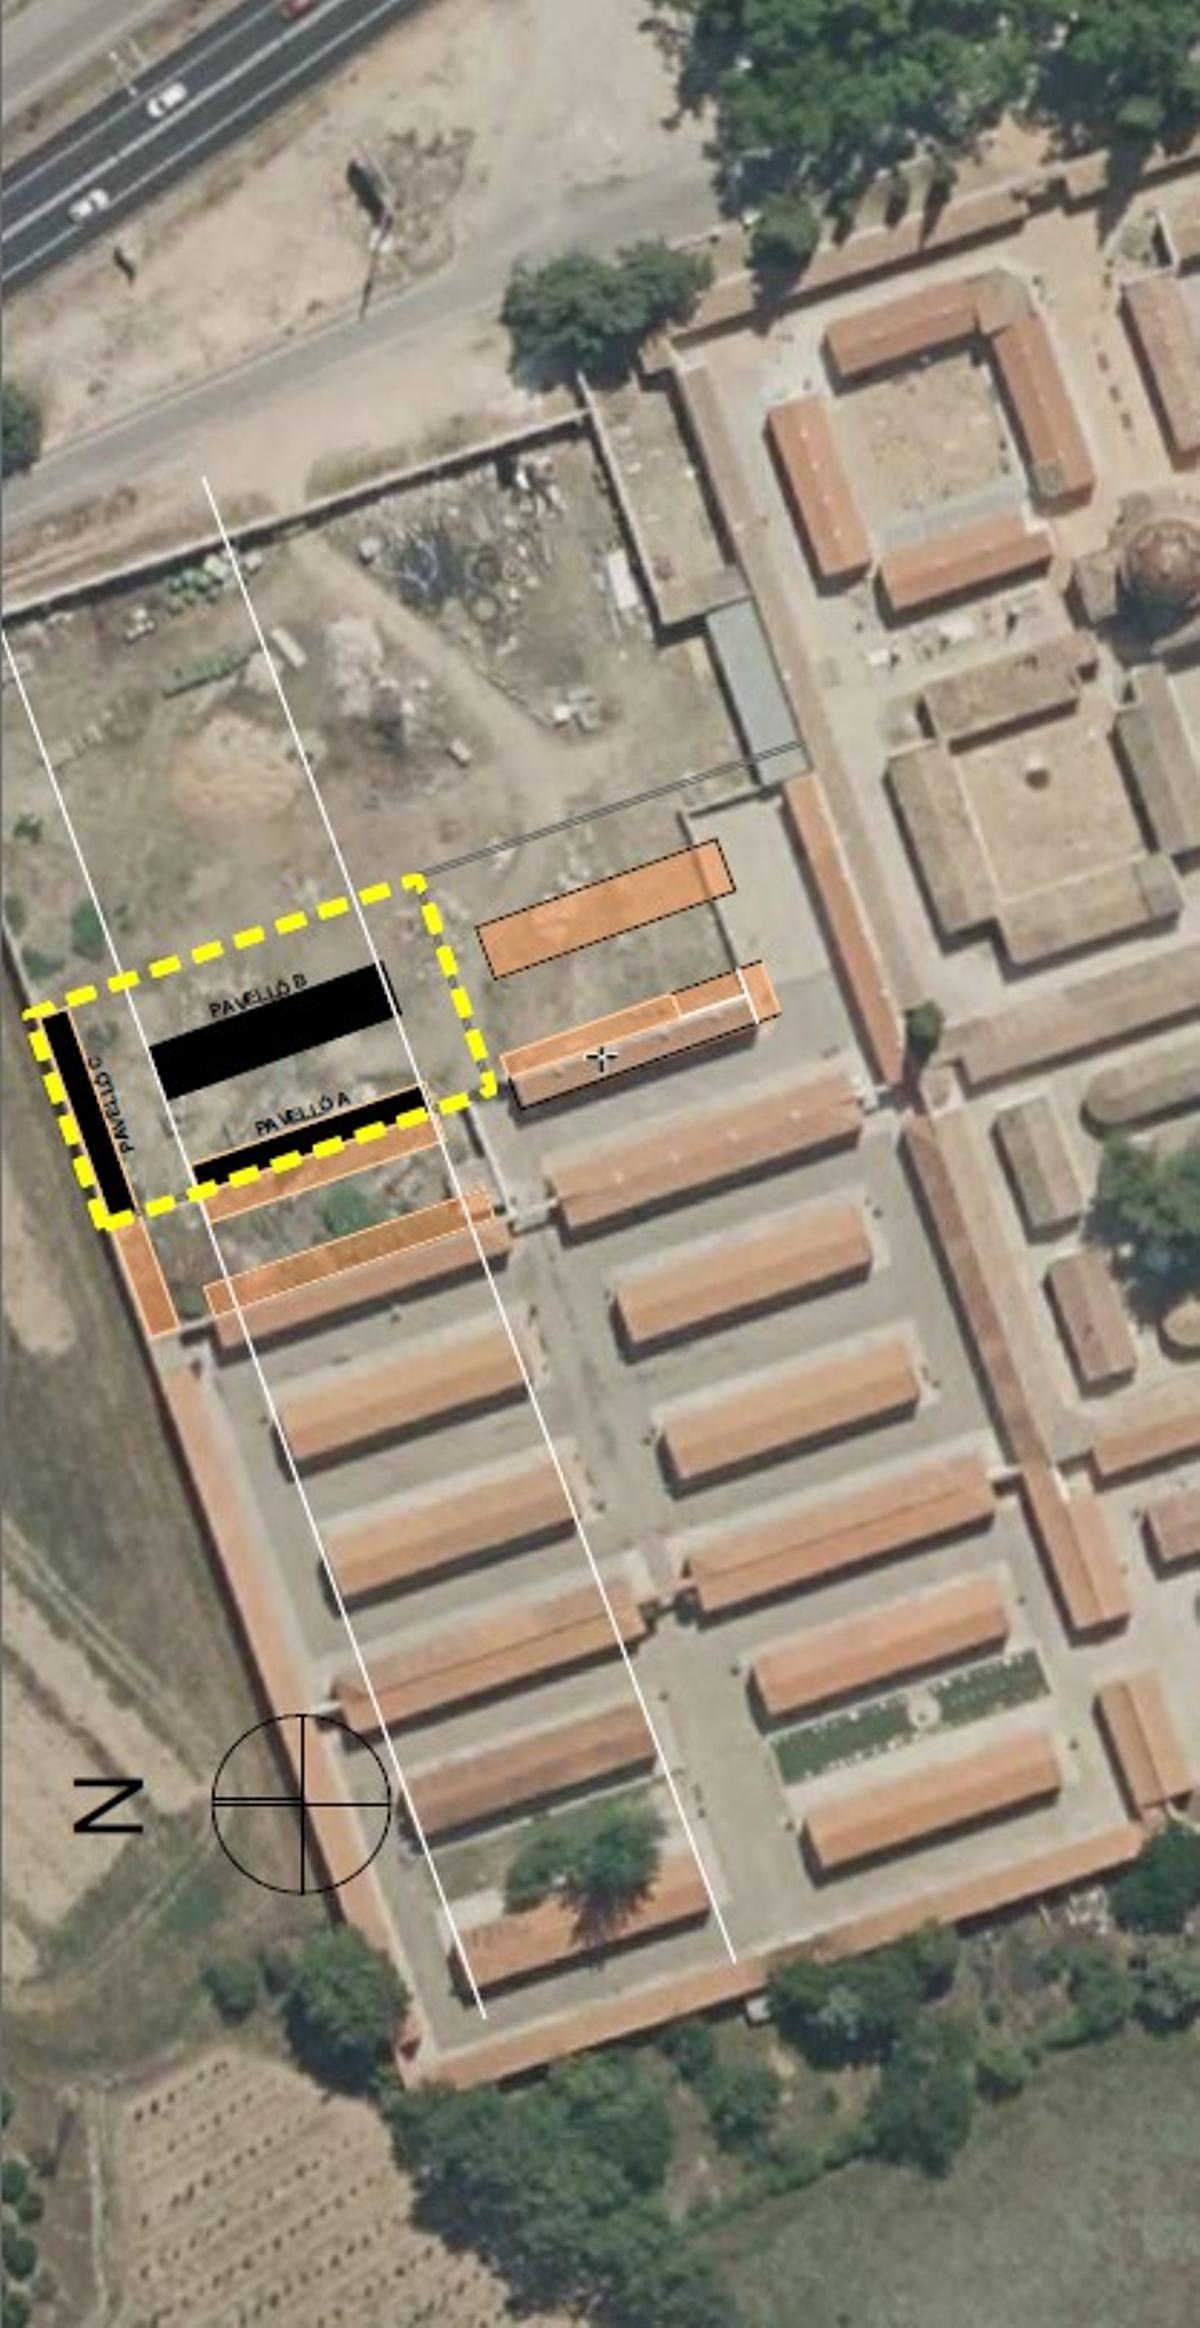 Emplazamiento en el cementerio de Xàtiva donde se construirán los nuevos nichos.